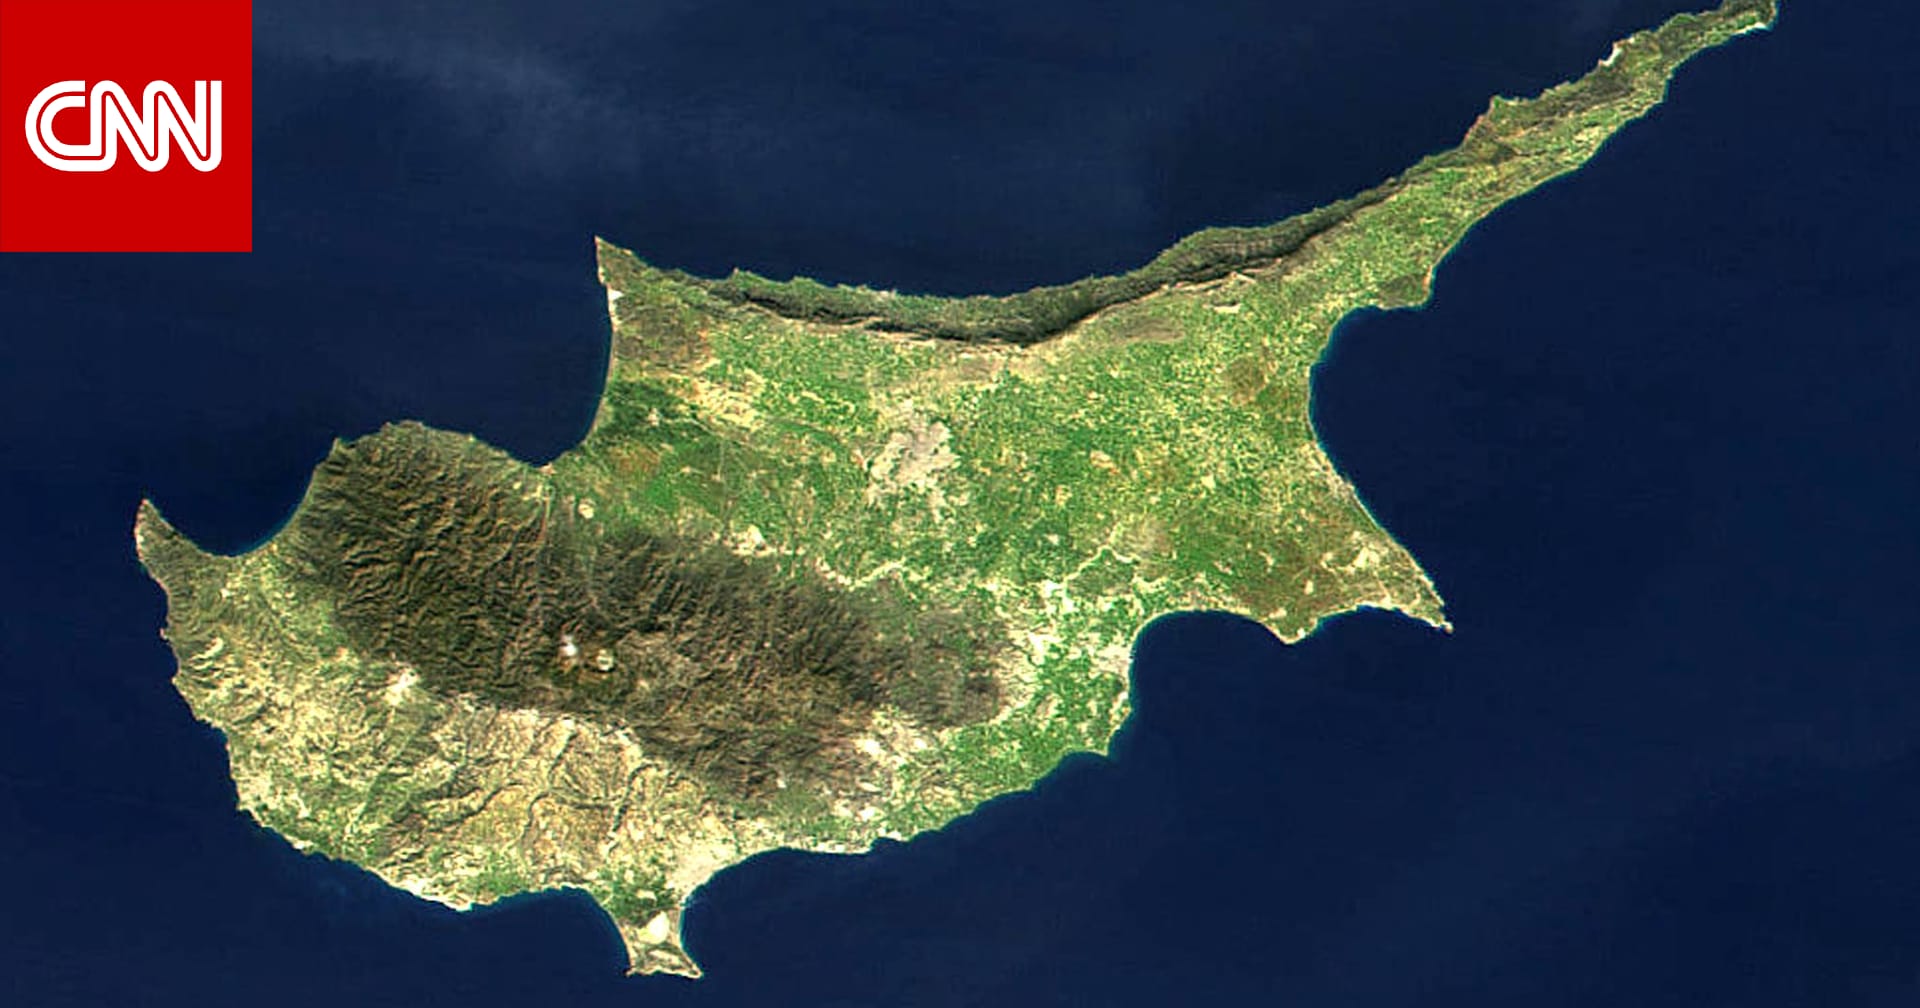 خريطة قبرص وبعدها عن لبنان تتصدر تفاعل نشطاء على مواقع التواصل بعد تهديد نصرالله